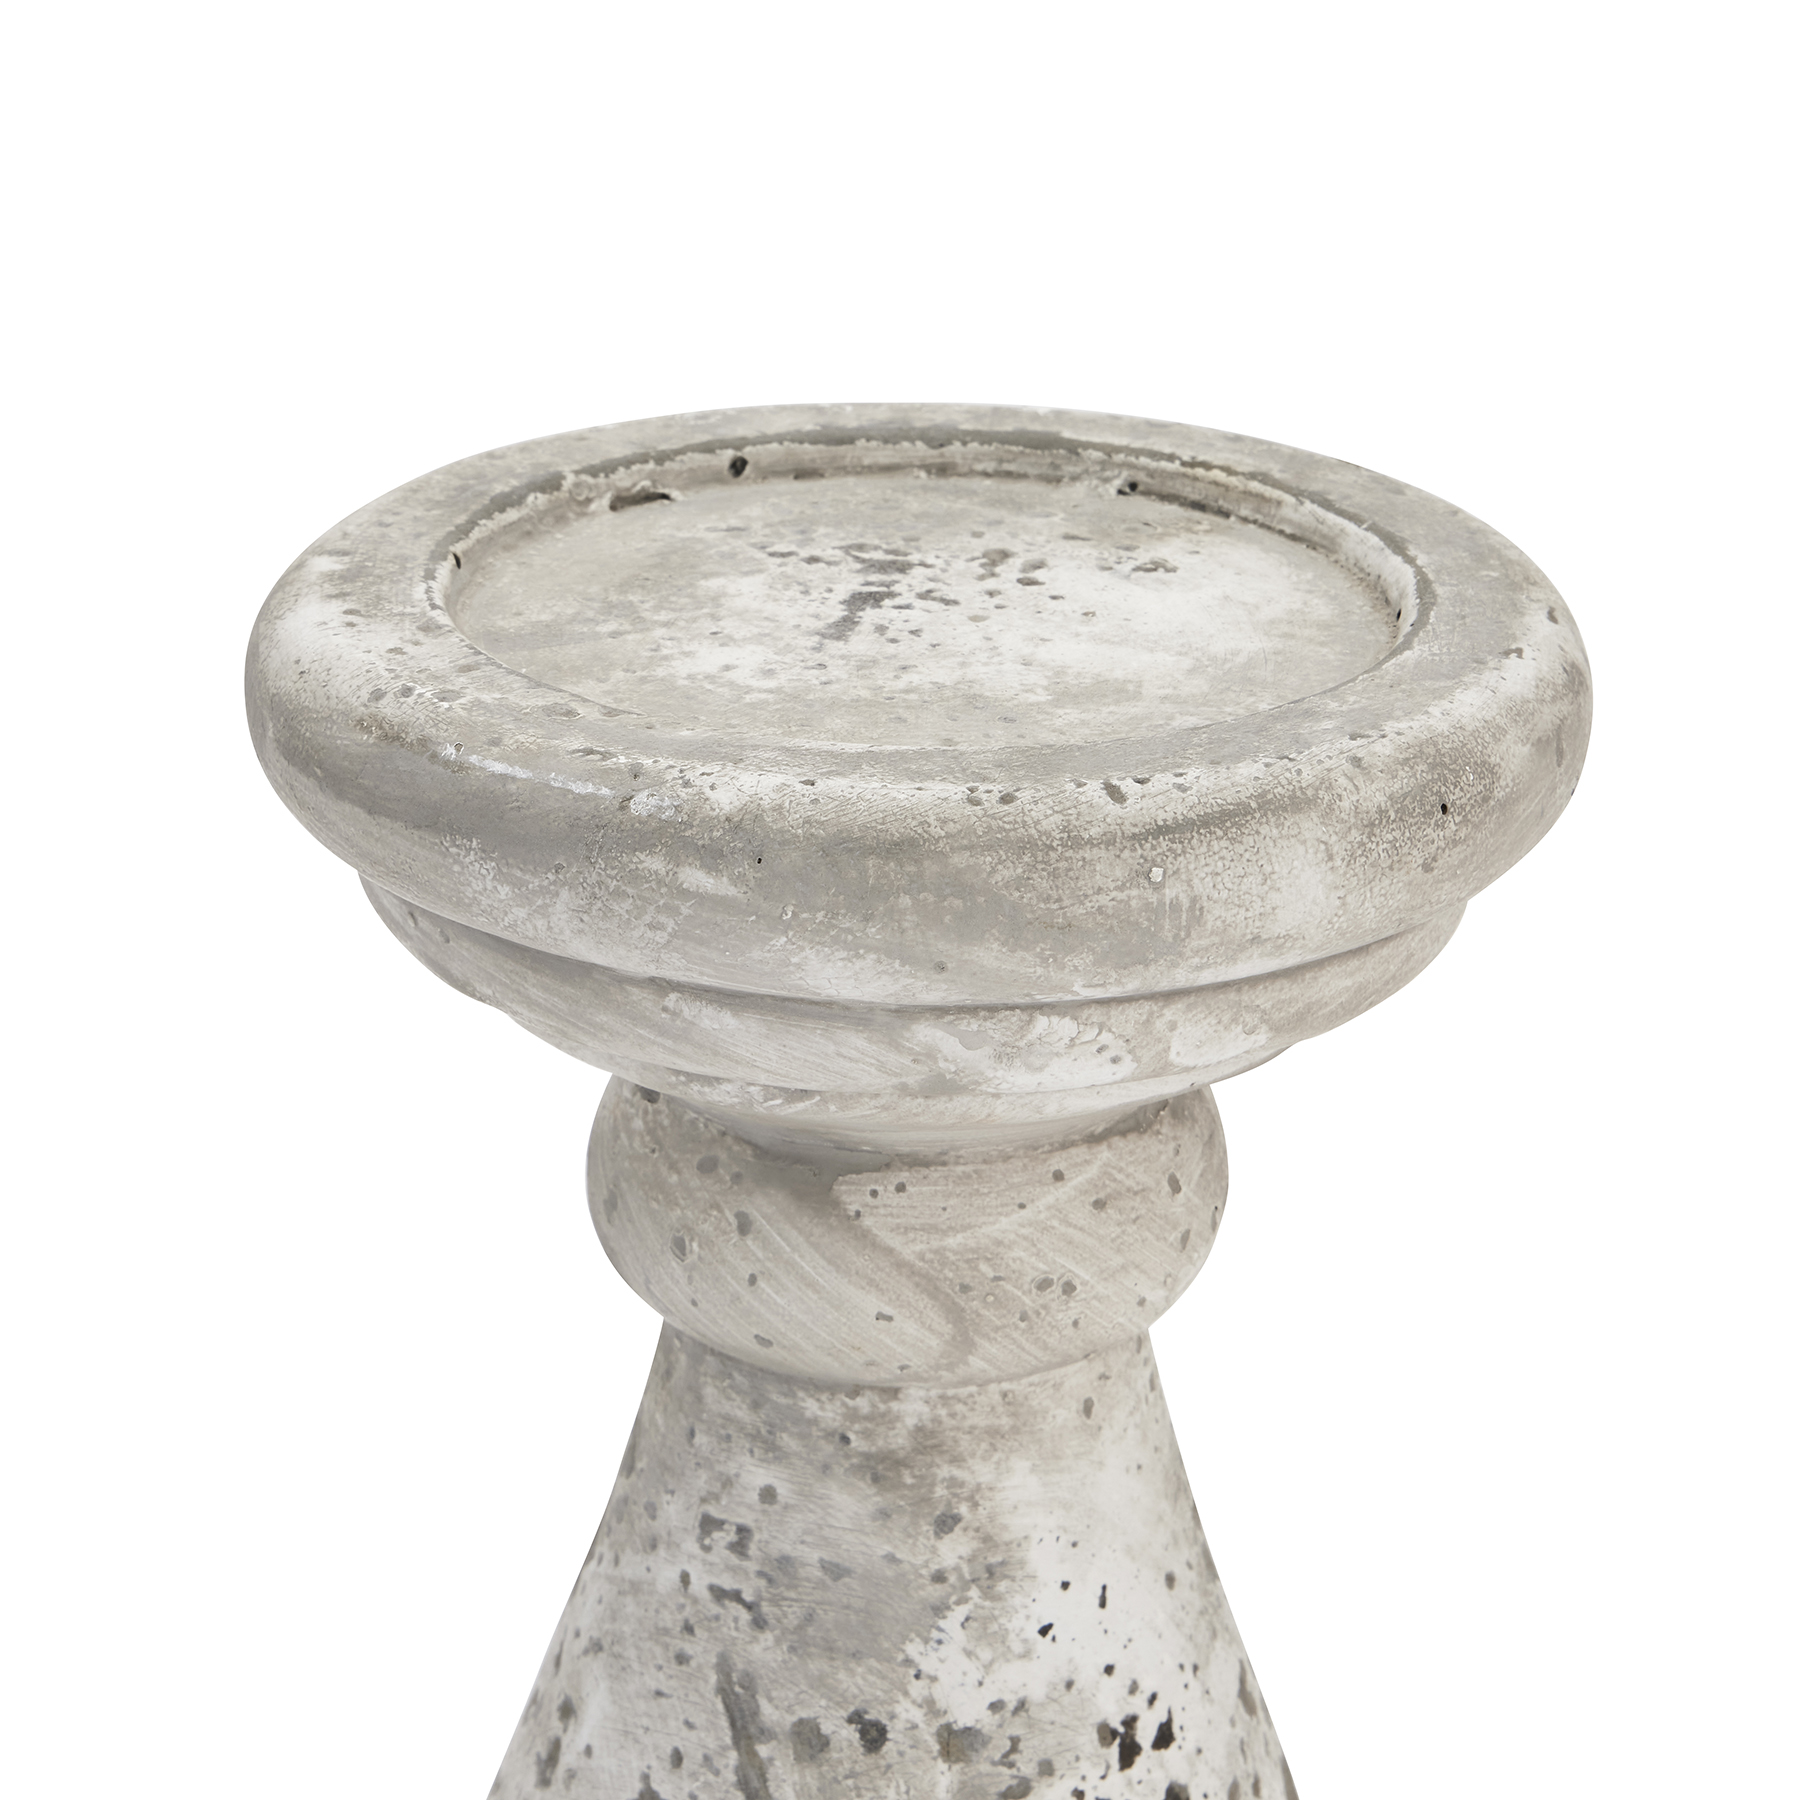 Large Stone Ceramic Candle Holder - Image 2